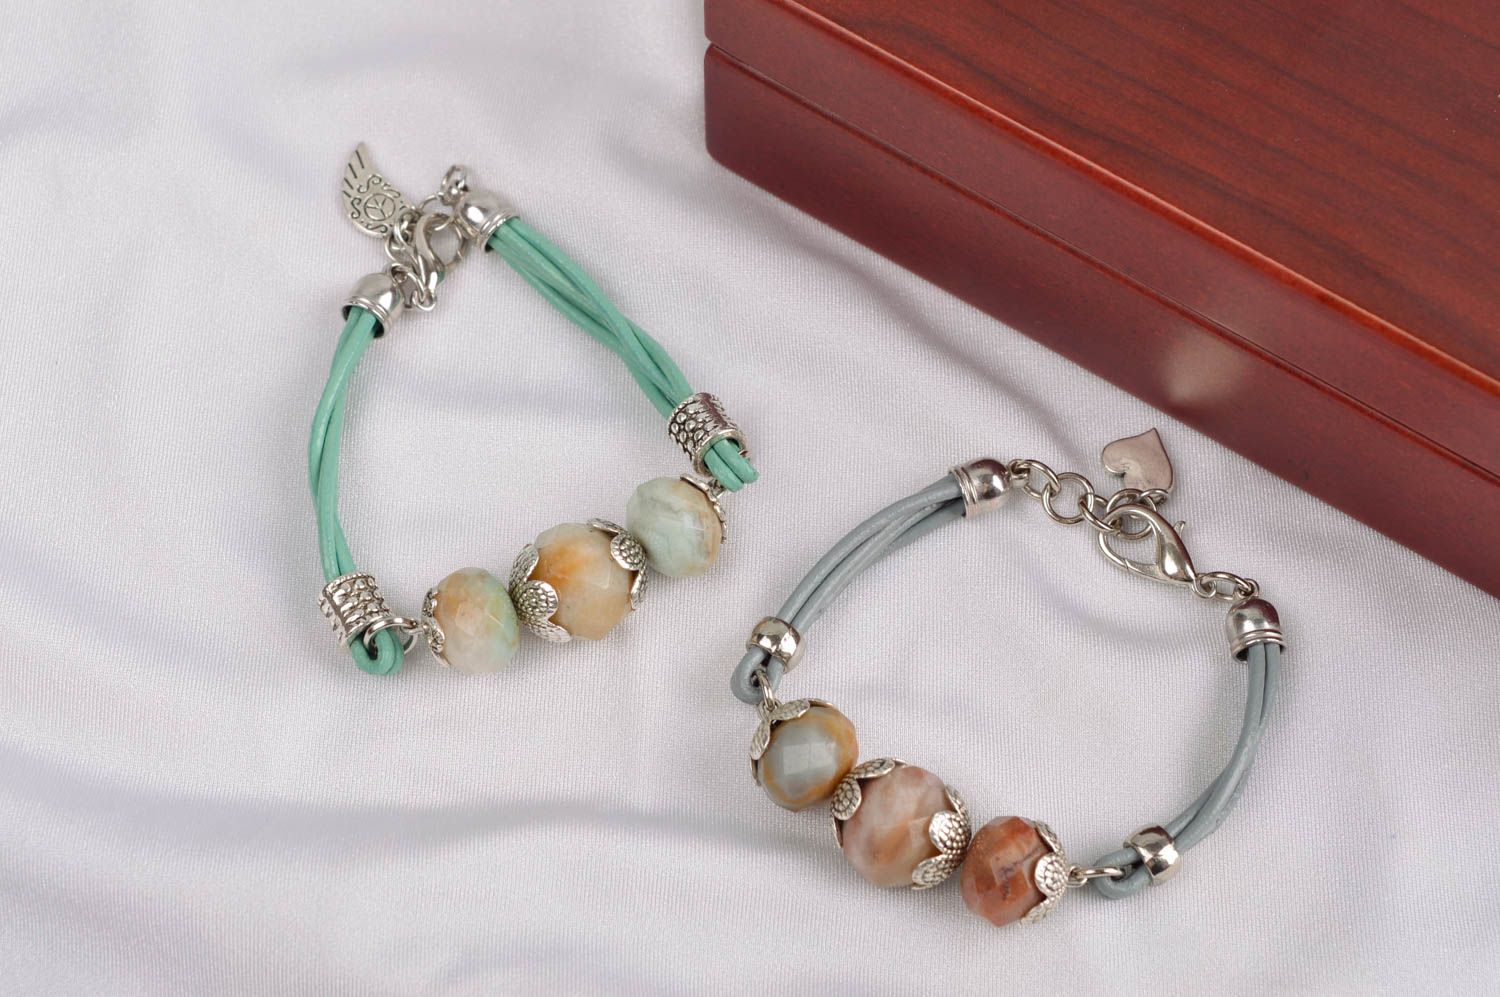 Handmade gemstone bracelet leather bracelet beaded bracelet designs gift ideas photo 1